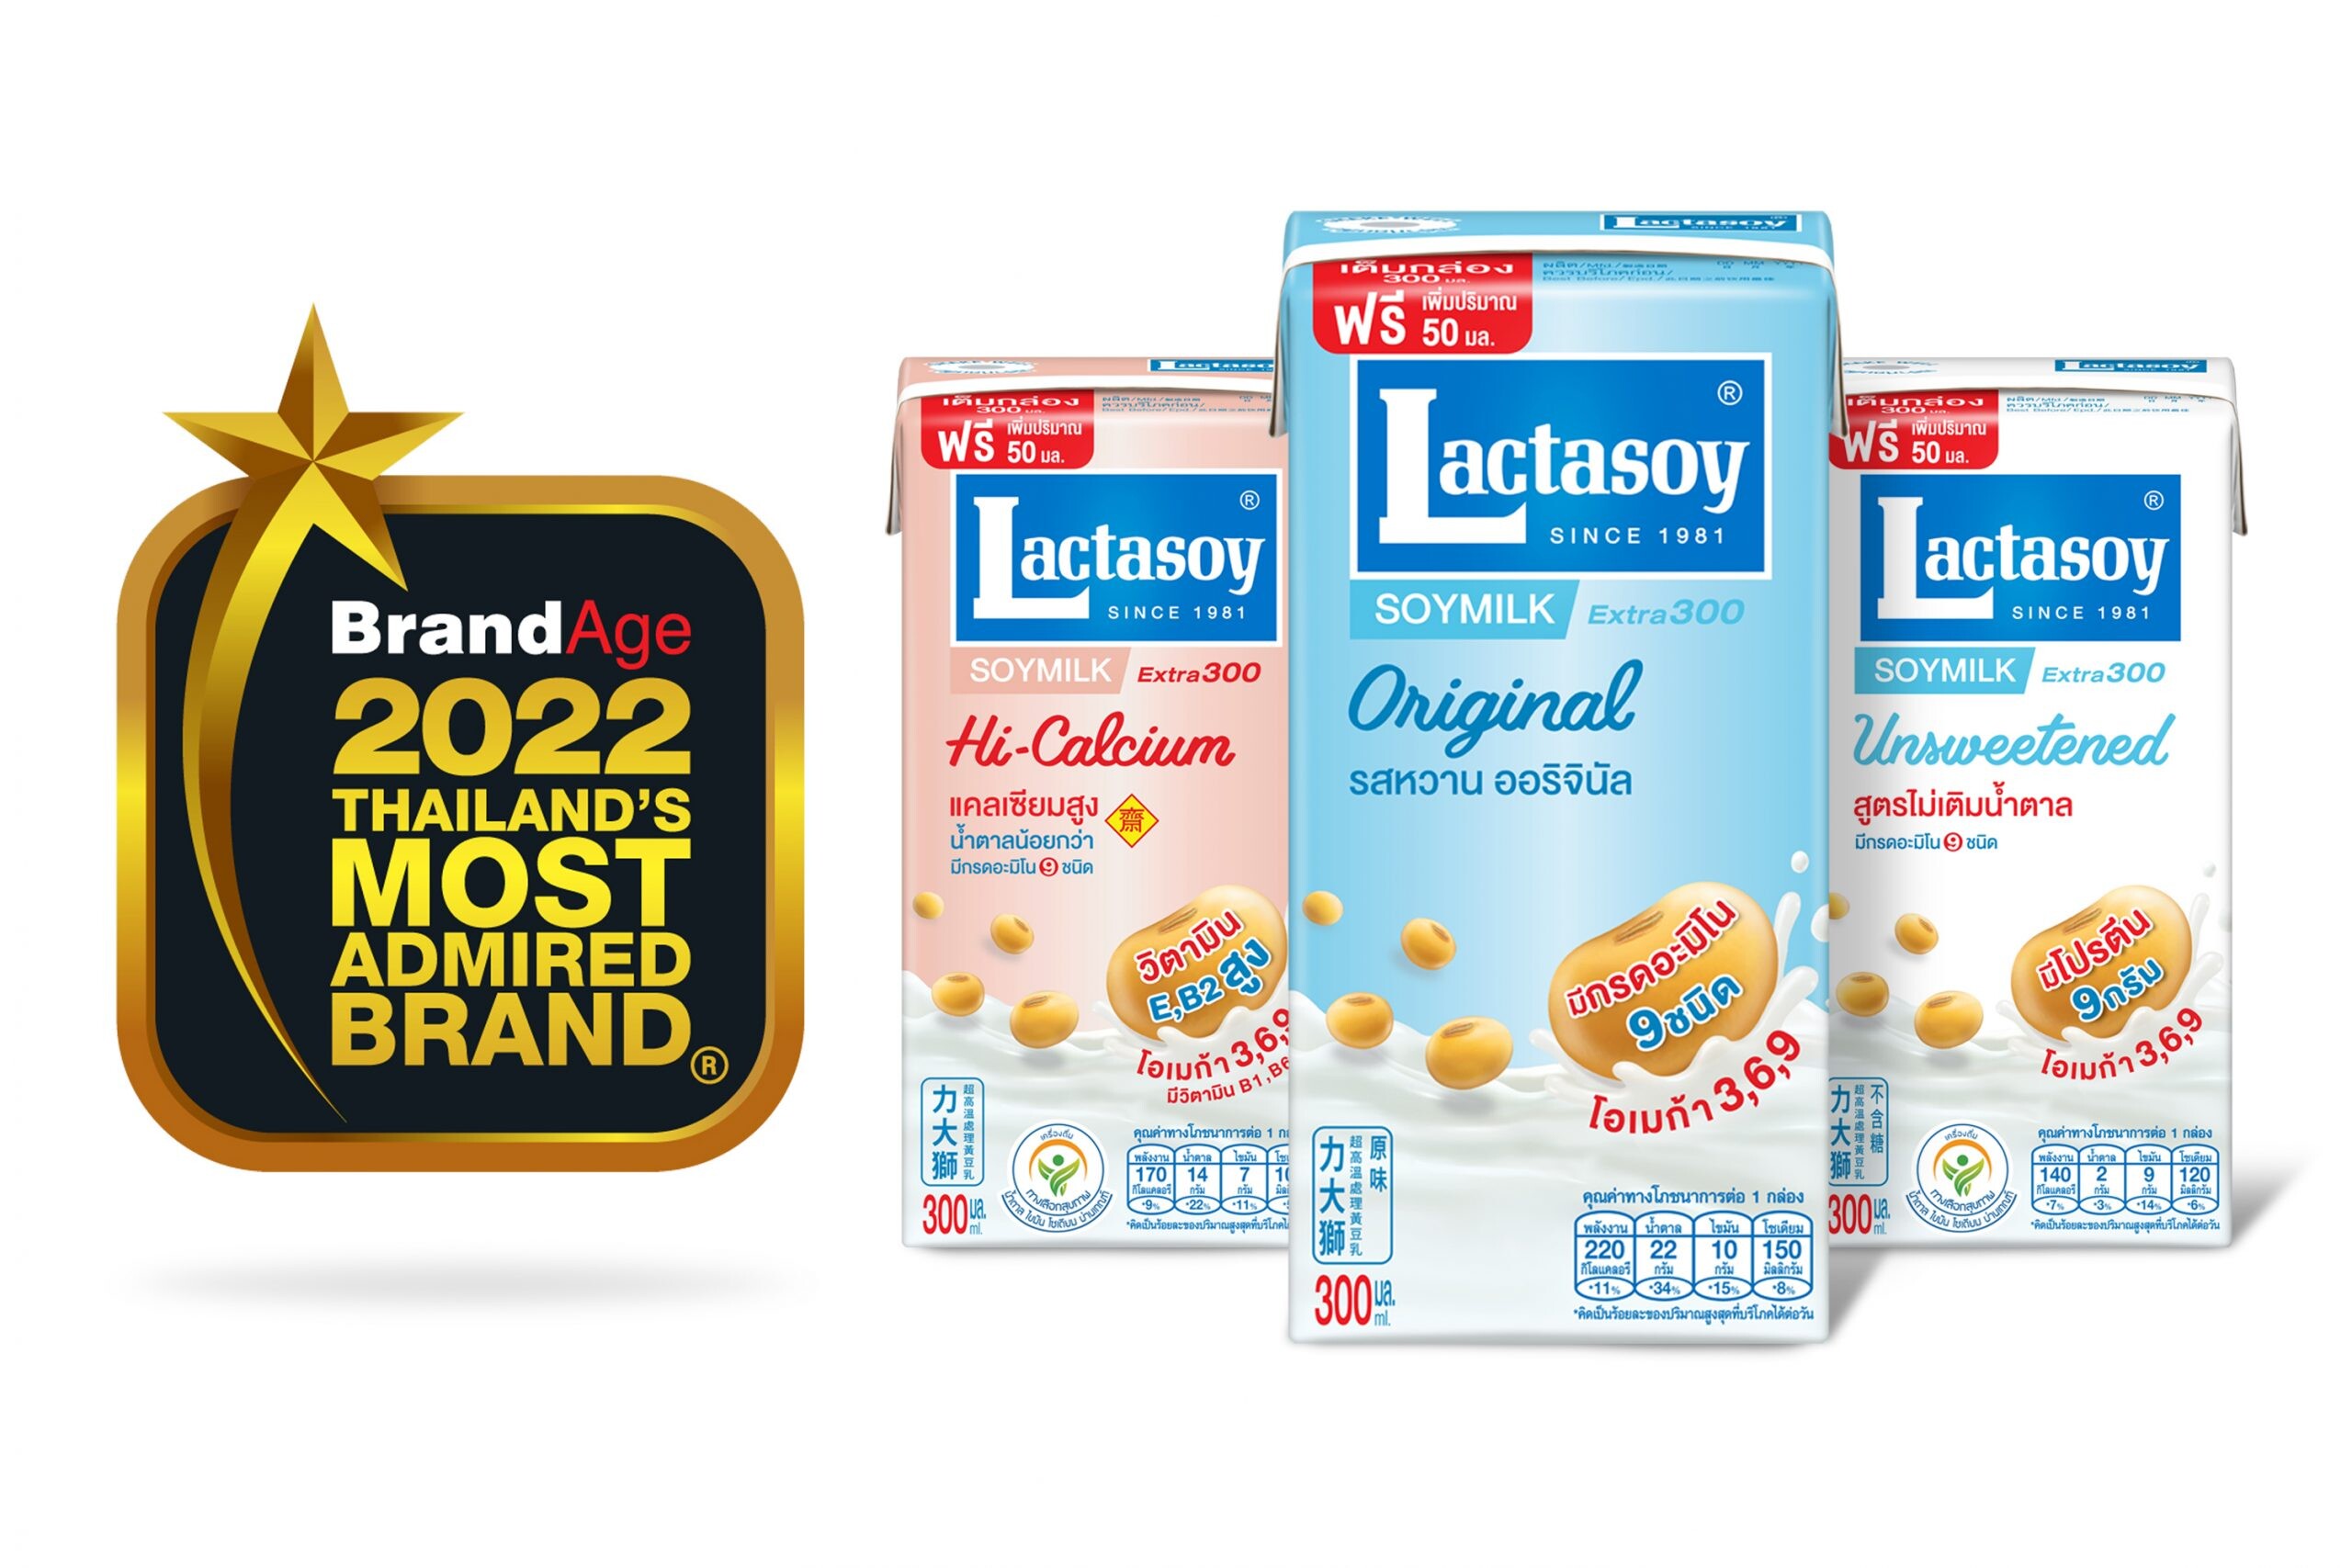 แลคตาซอย ครองบัลลังก์แบรนด์นมถั่วเหลืองที่หนึ่งในใจผู้บริโภค การันตีด้วยรางวัลล่าสุด "2022 Thailand's Most Admired Brand"